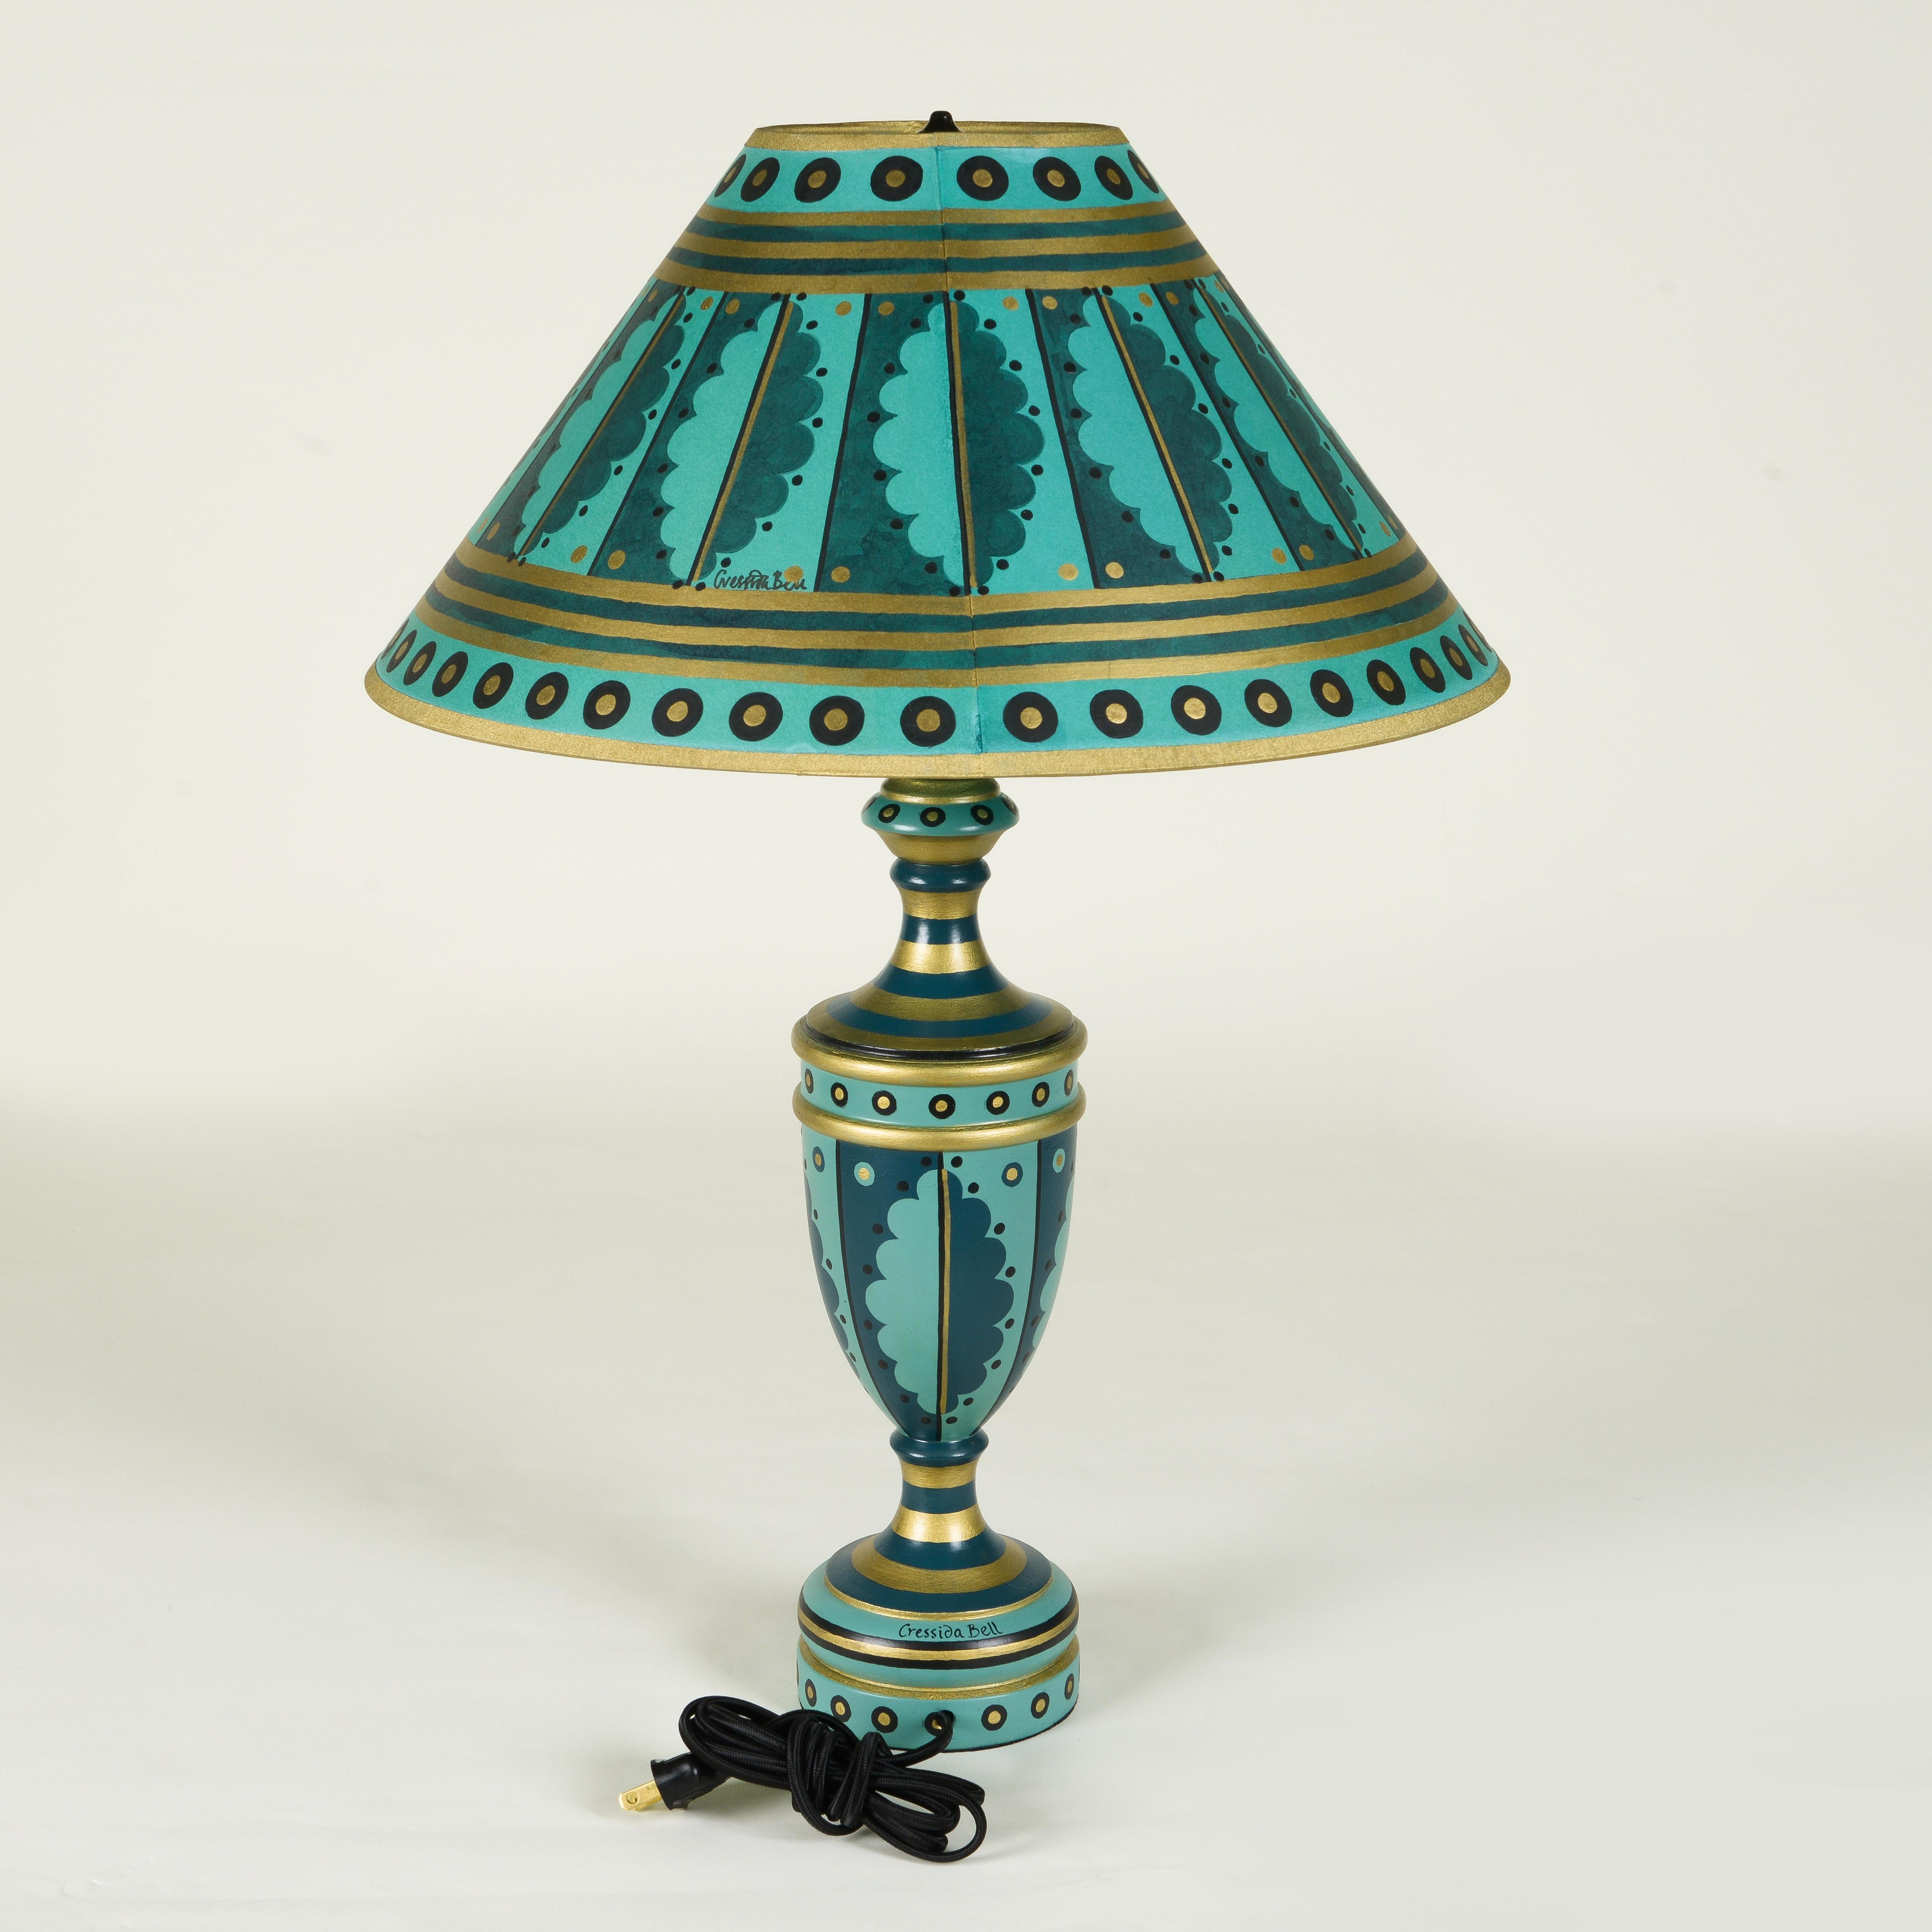 Handbemalte Tischlampe mit Holzsockel und passendem Schirm, verziert mit verschiedenen Blau-, Gold- und Schwarztönen.

Cressida Bell ist eine britische Designerin, die sich auf Textilien und Inneneinrichtungen spezialisiert hat. In ihrem Londoner